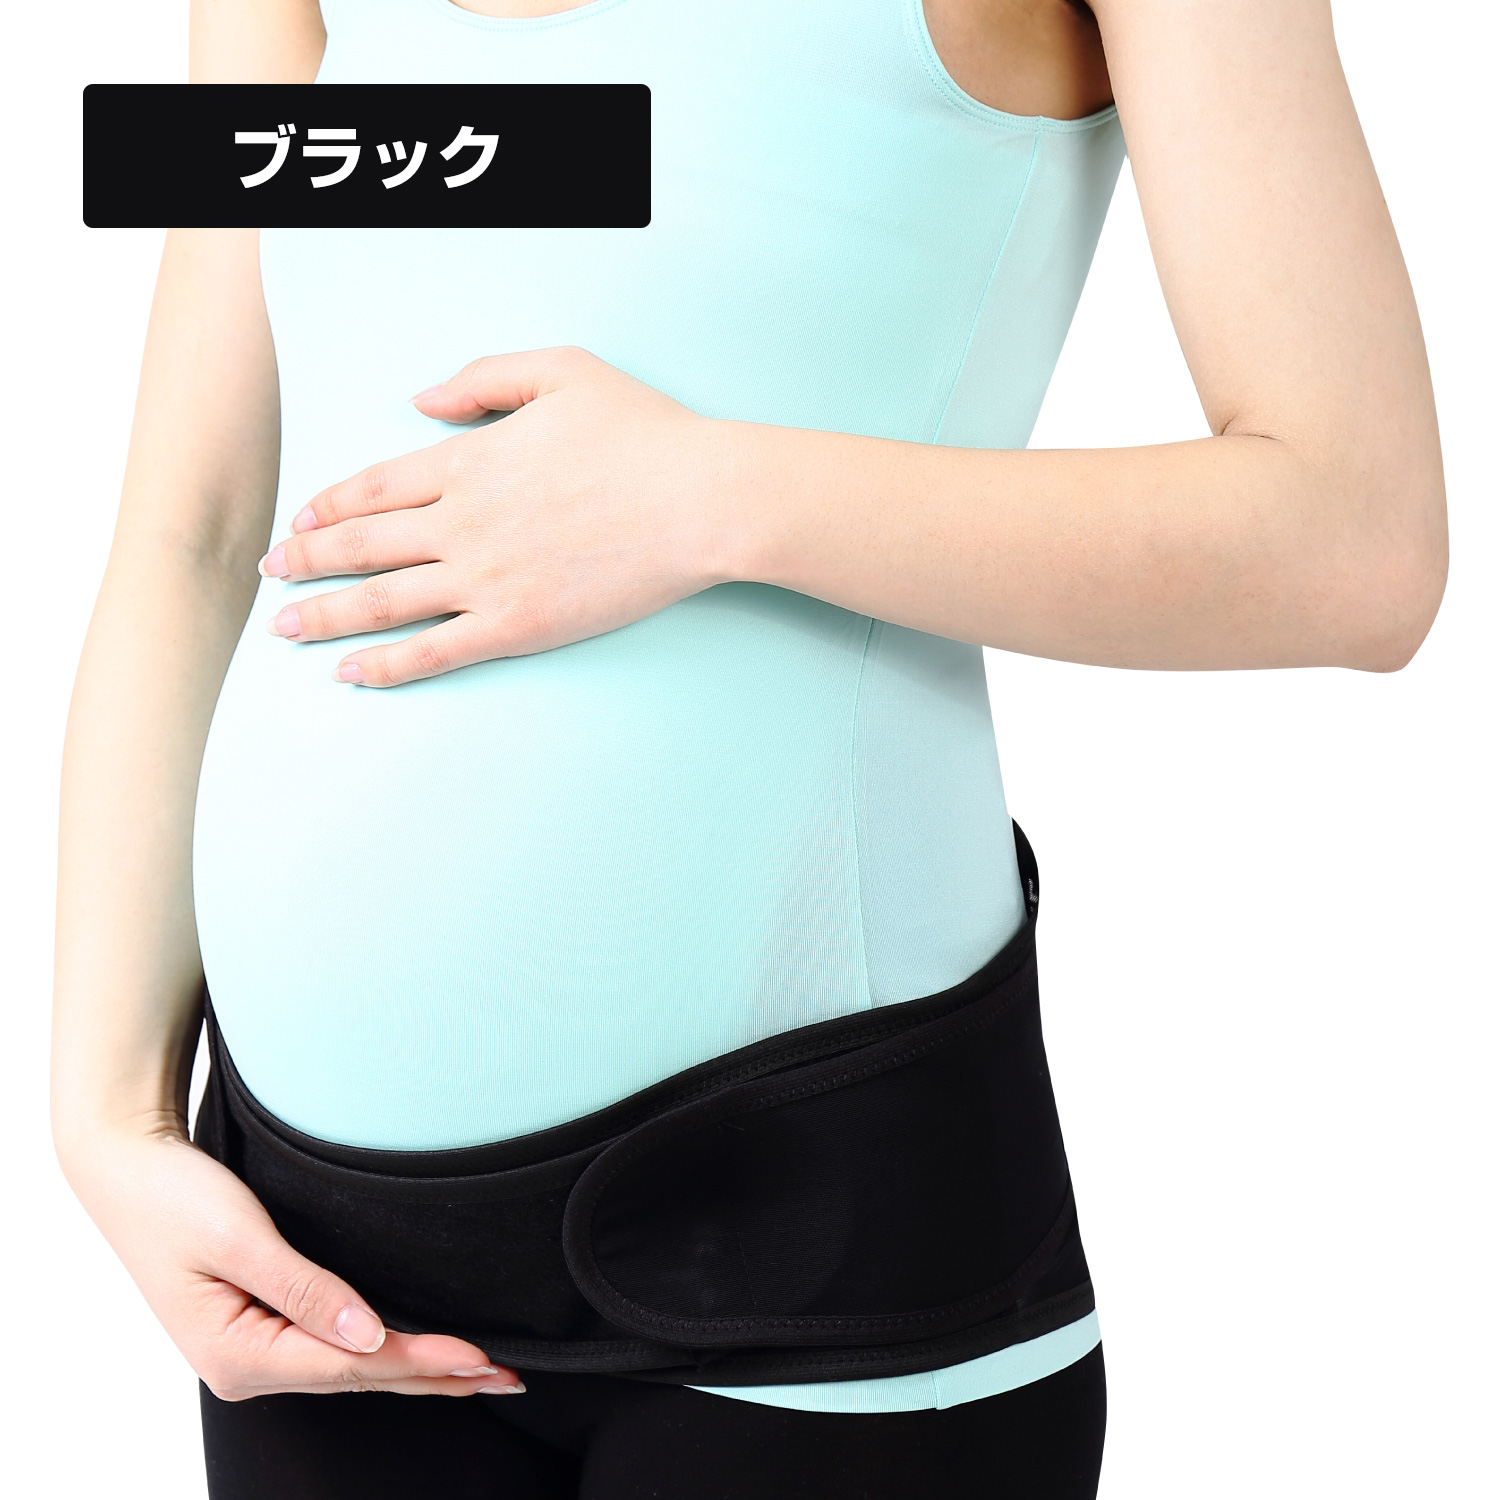 楽天市場 送料無料 Louish マタニティベルト 妊婦帯 骨盤ベルト 妊婦 腹帯 妊娠帯 これ一本で産前産後使える 腰痛 骨盤矯正 簡単 フリーサイズ 医療機器と育児グッズのちゃいなび